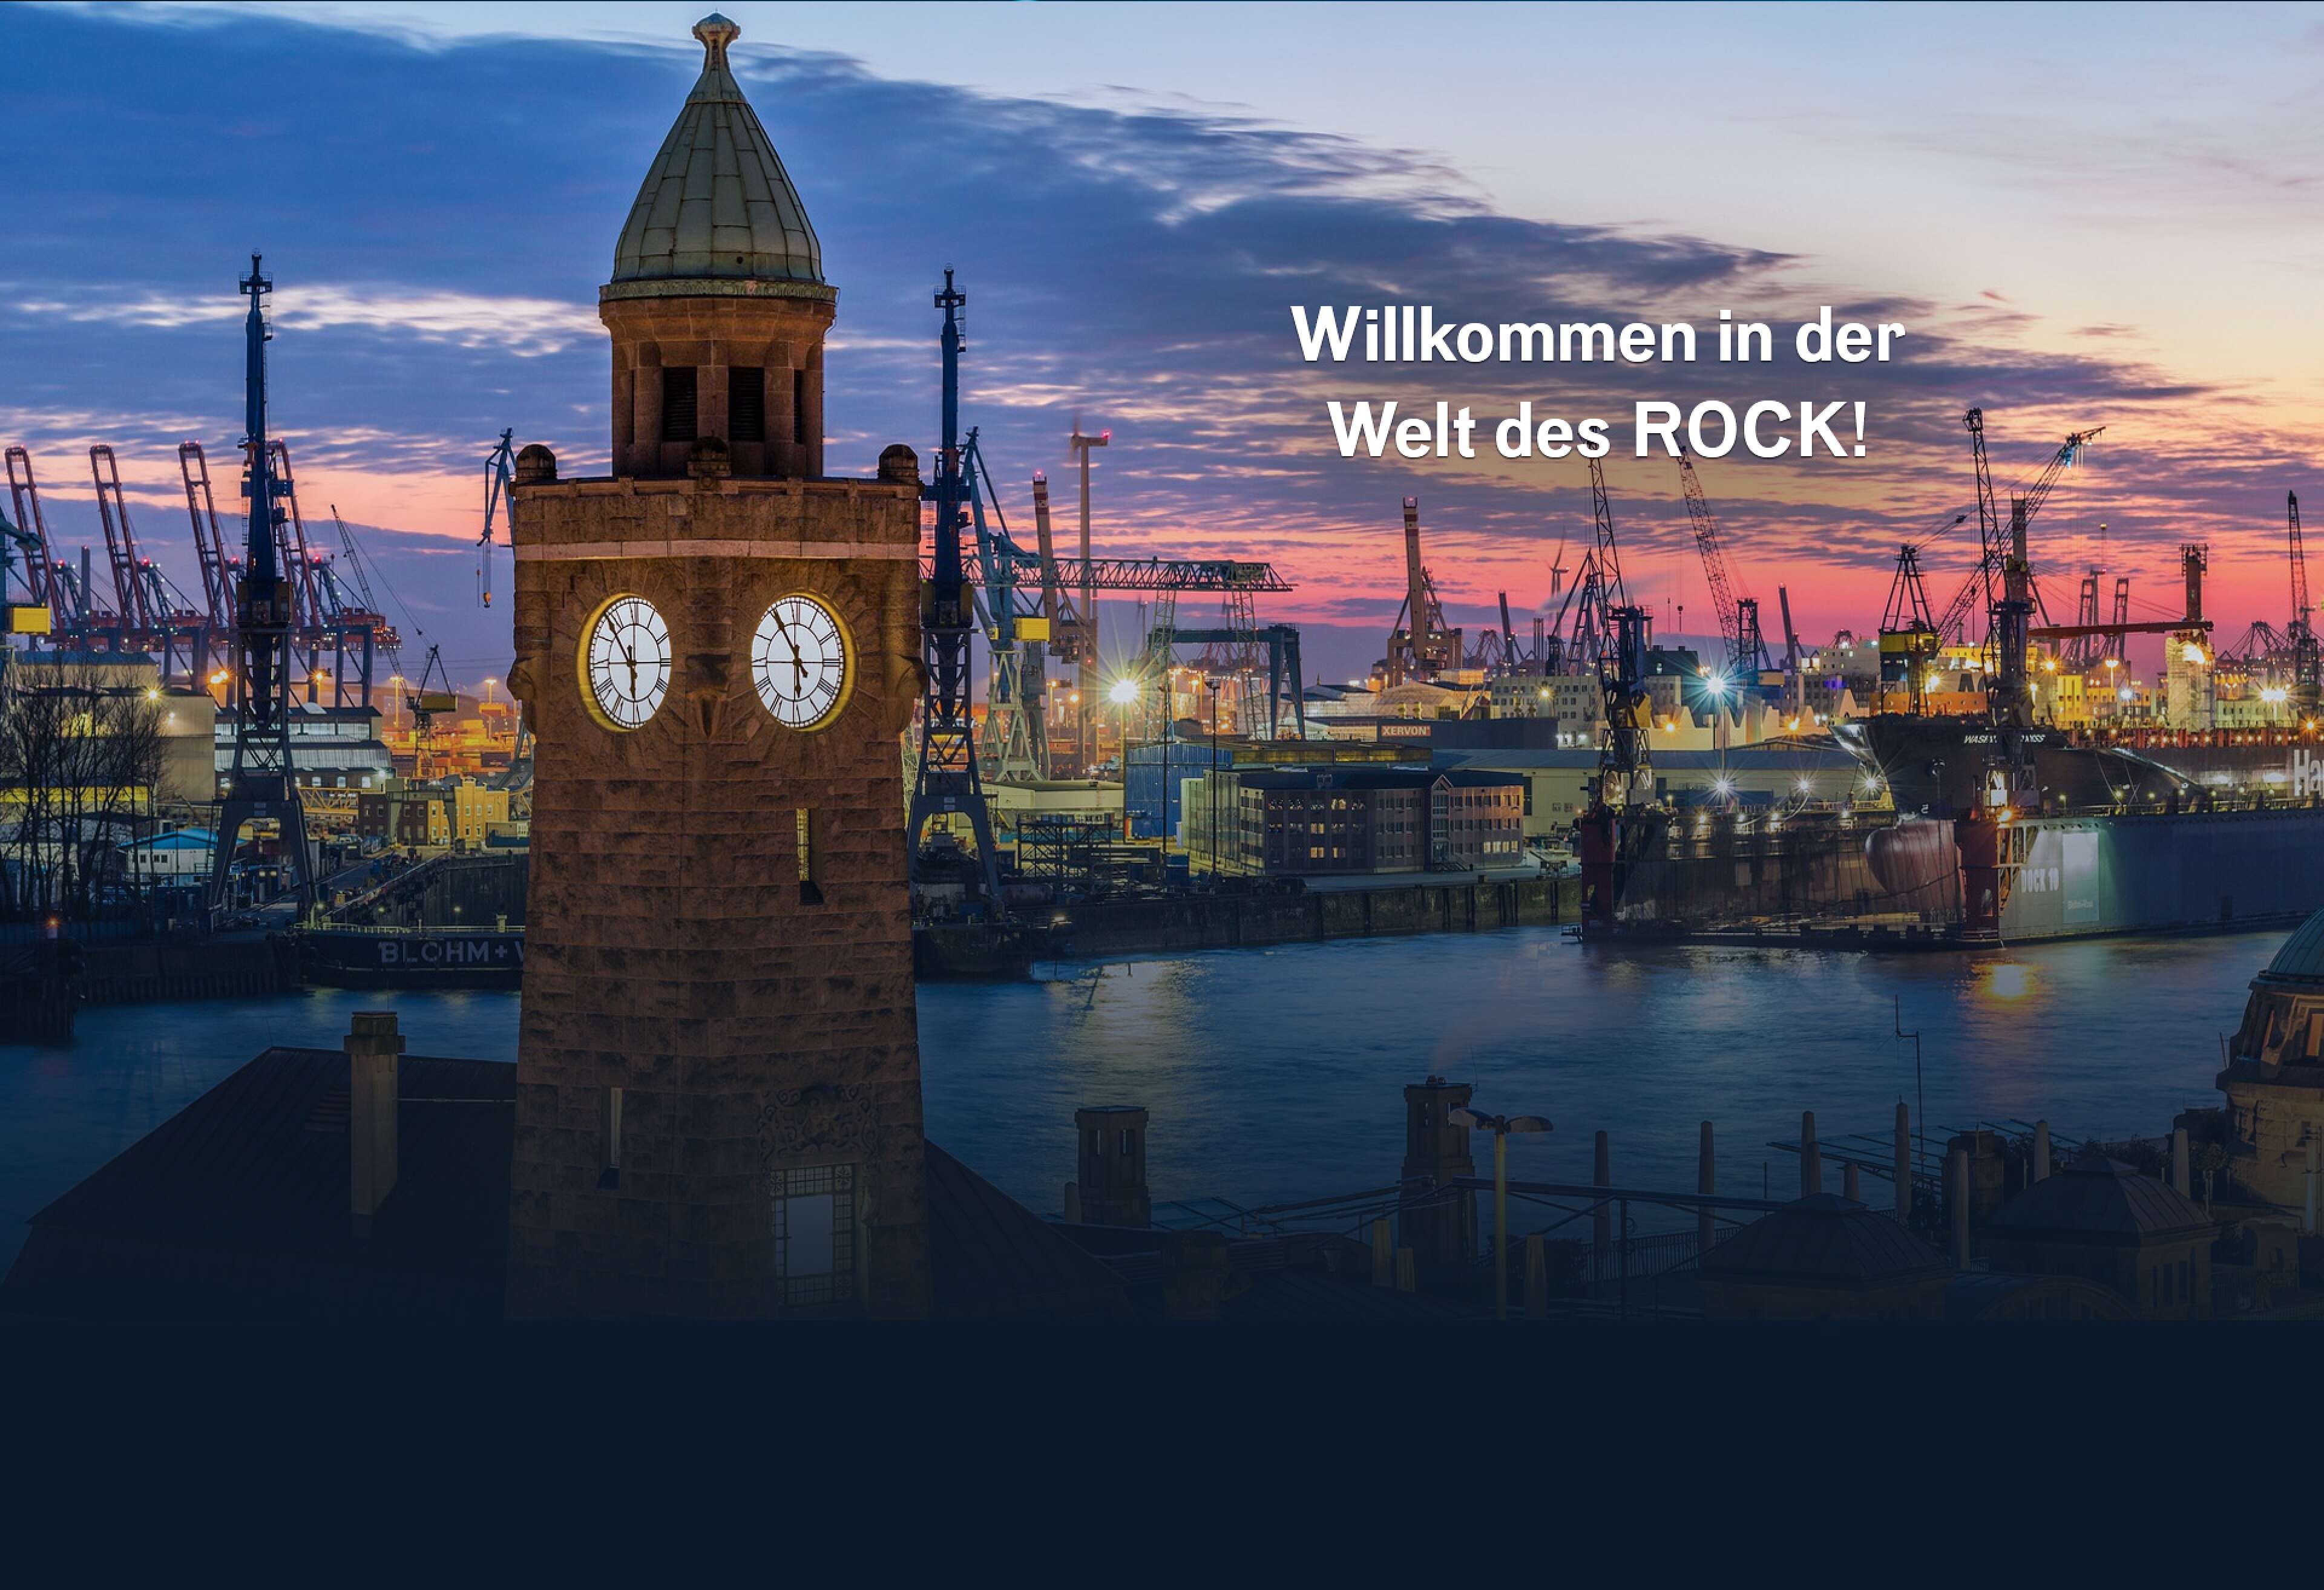 Ein Bild vom Hamburger Hafen im Abendlicht, Beschriftung: "Willkommen in der Welt des Rock!"